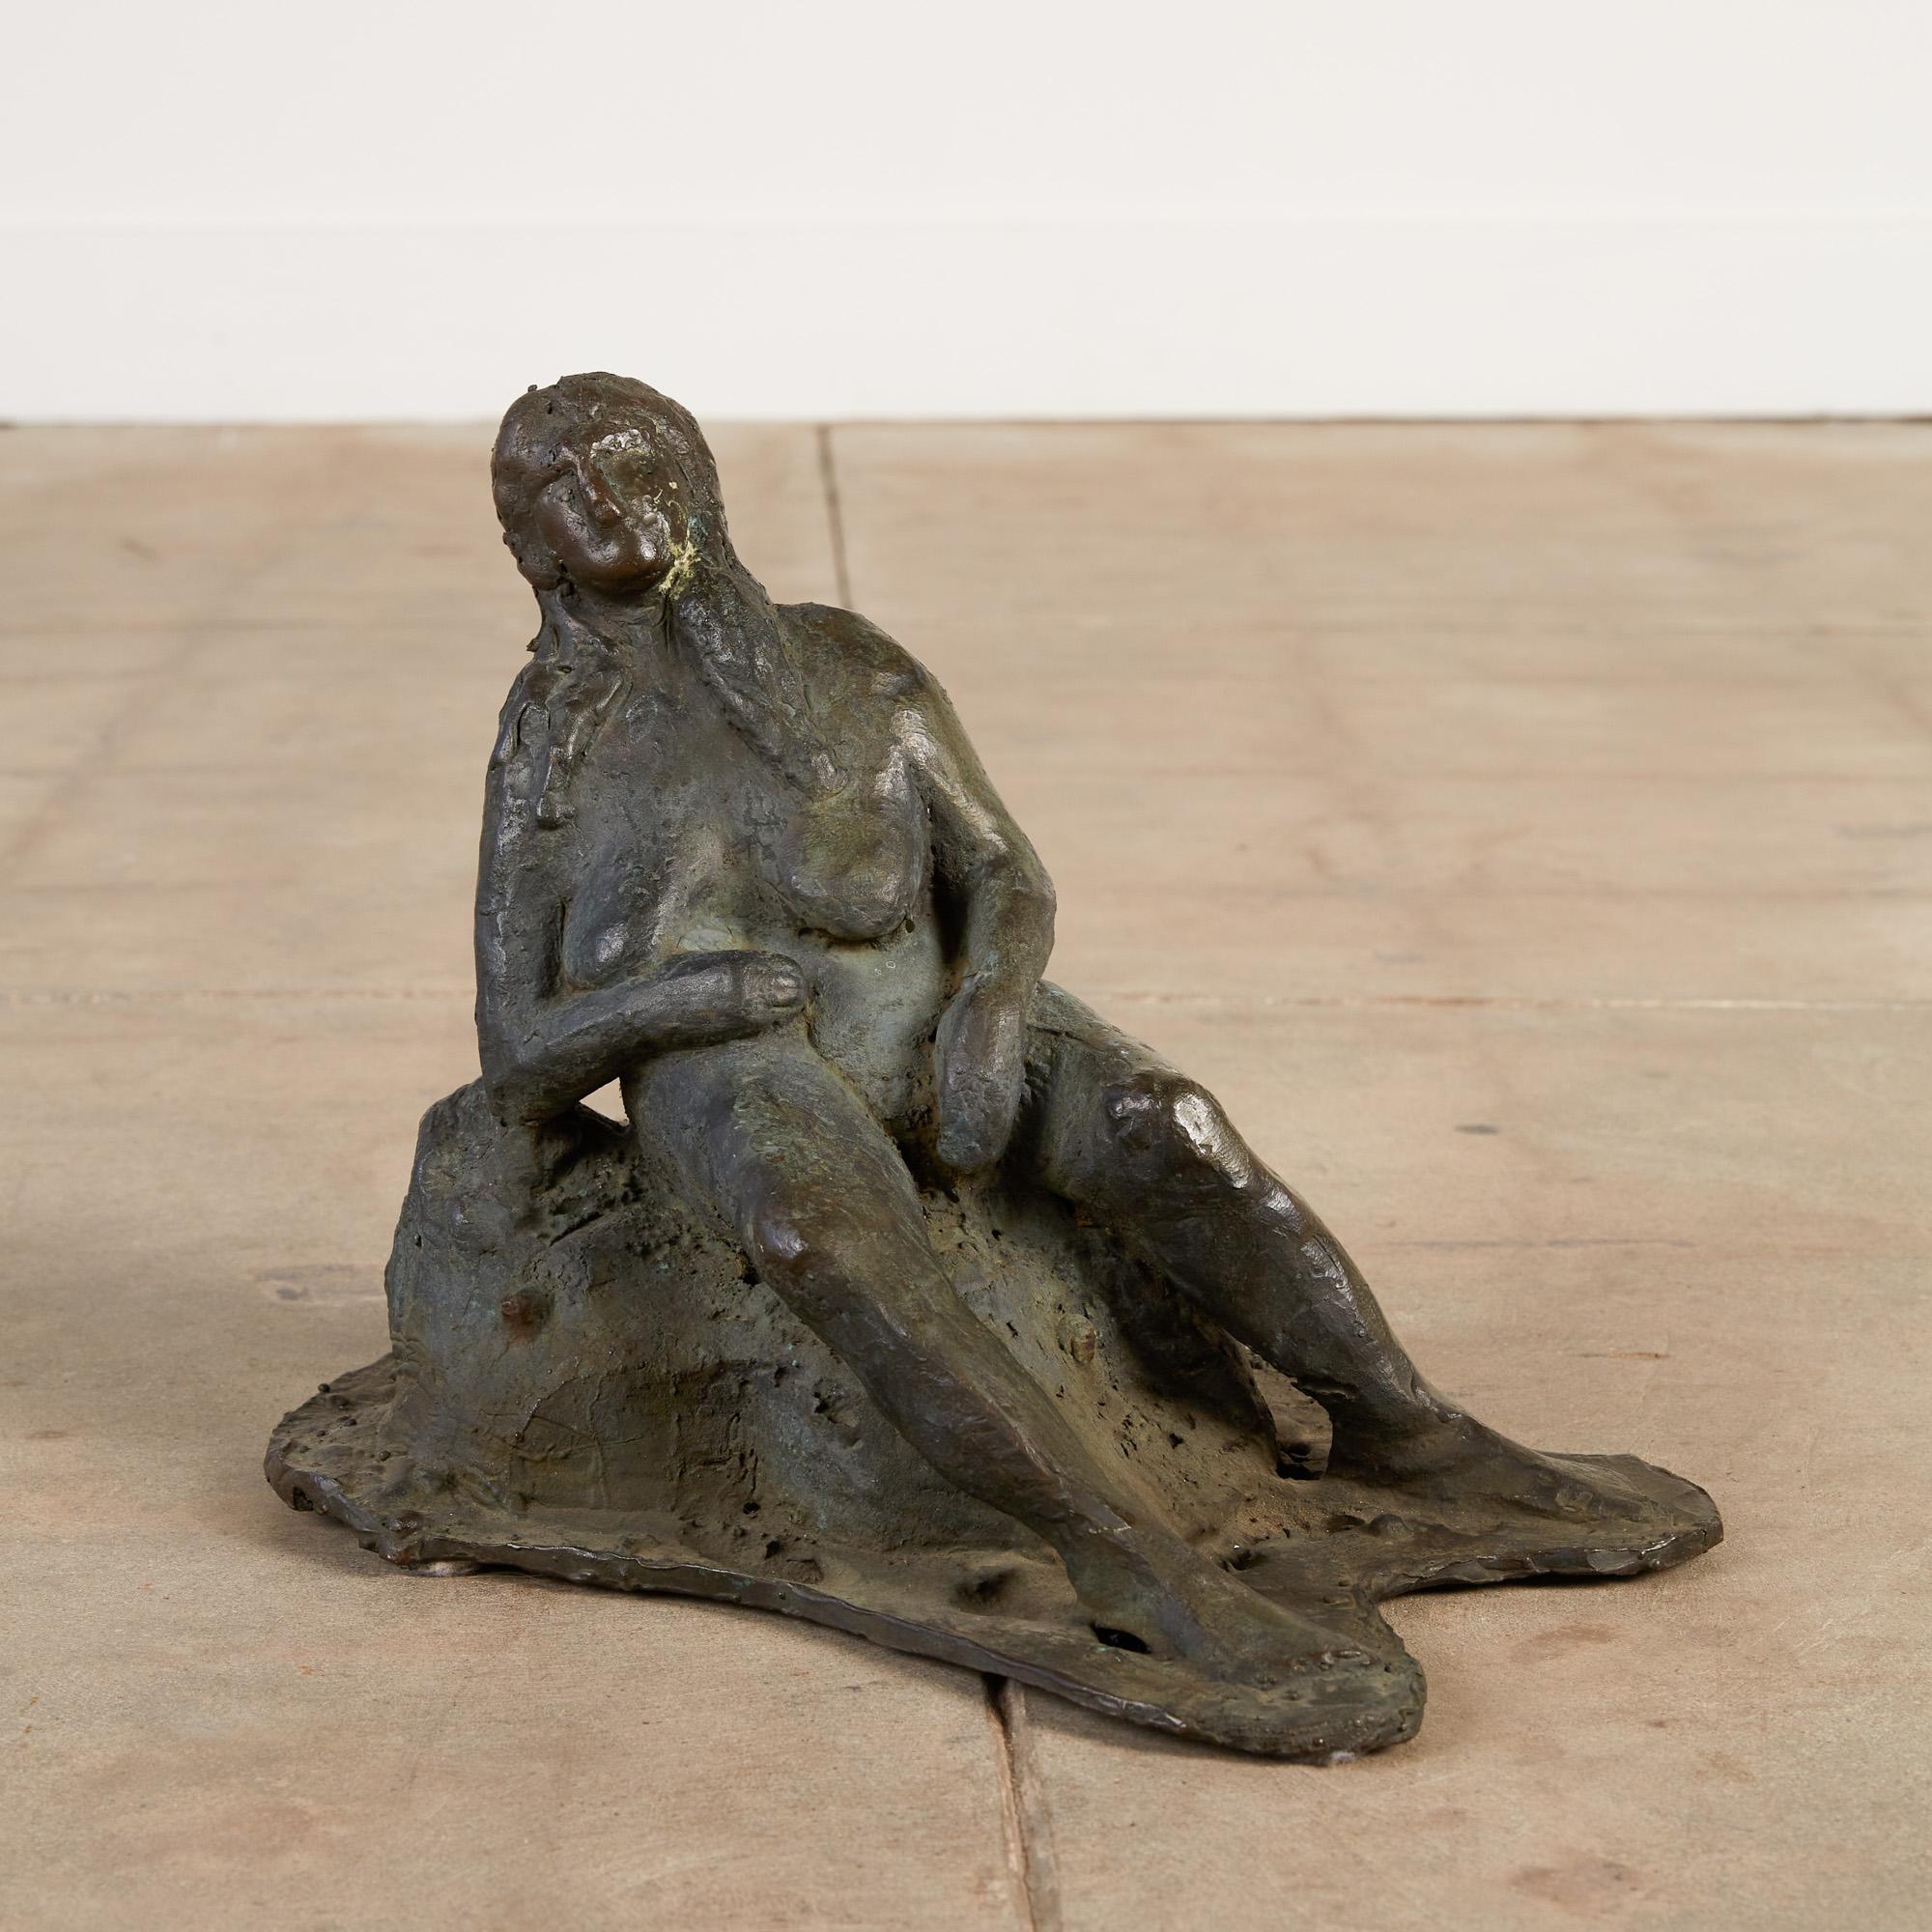 Diese gegossene Bronzeskulptur stellt eine Frau dar, die in einem Moment festgehalten wird, nachdem sie gerade ein Bad an ihrem Lieblingssee beendet hat. Sie genießt die Aussicht, während sie sich auf einem Felsen ausruht und an der Luft so weit